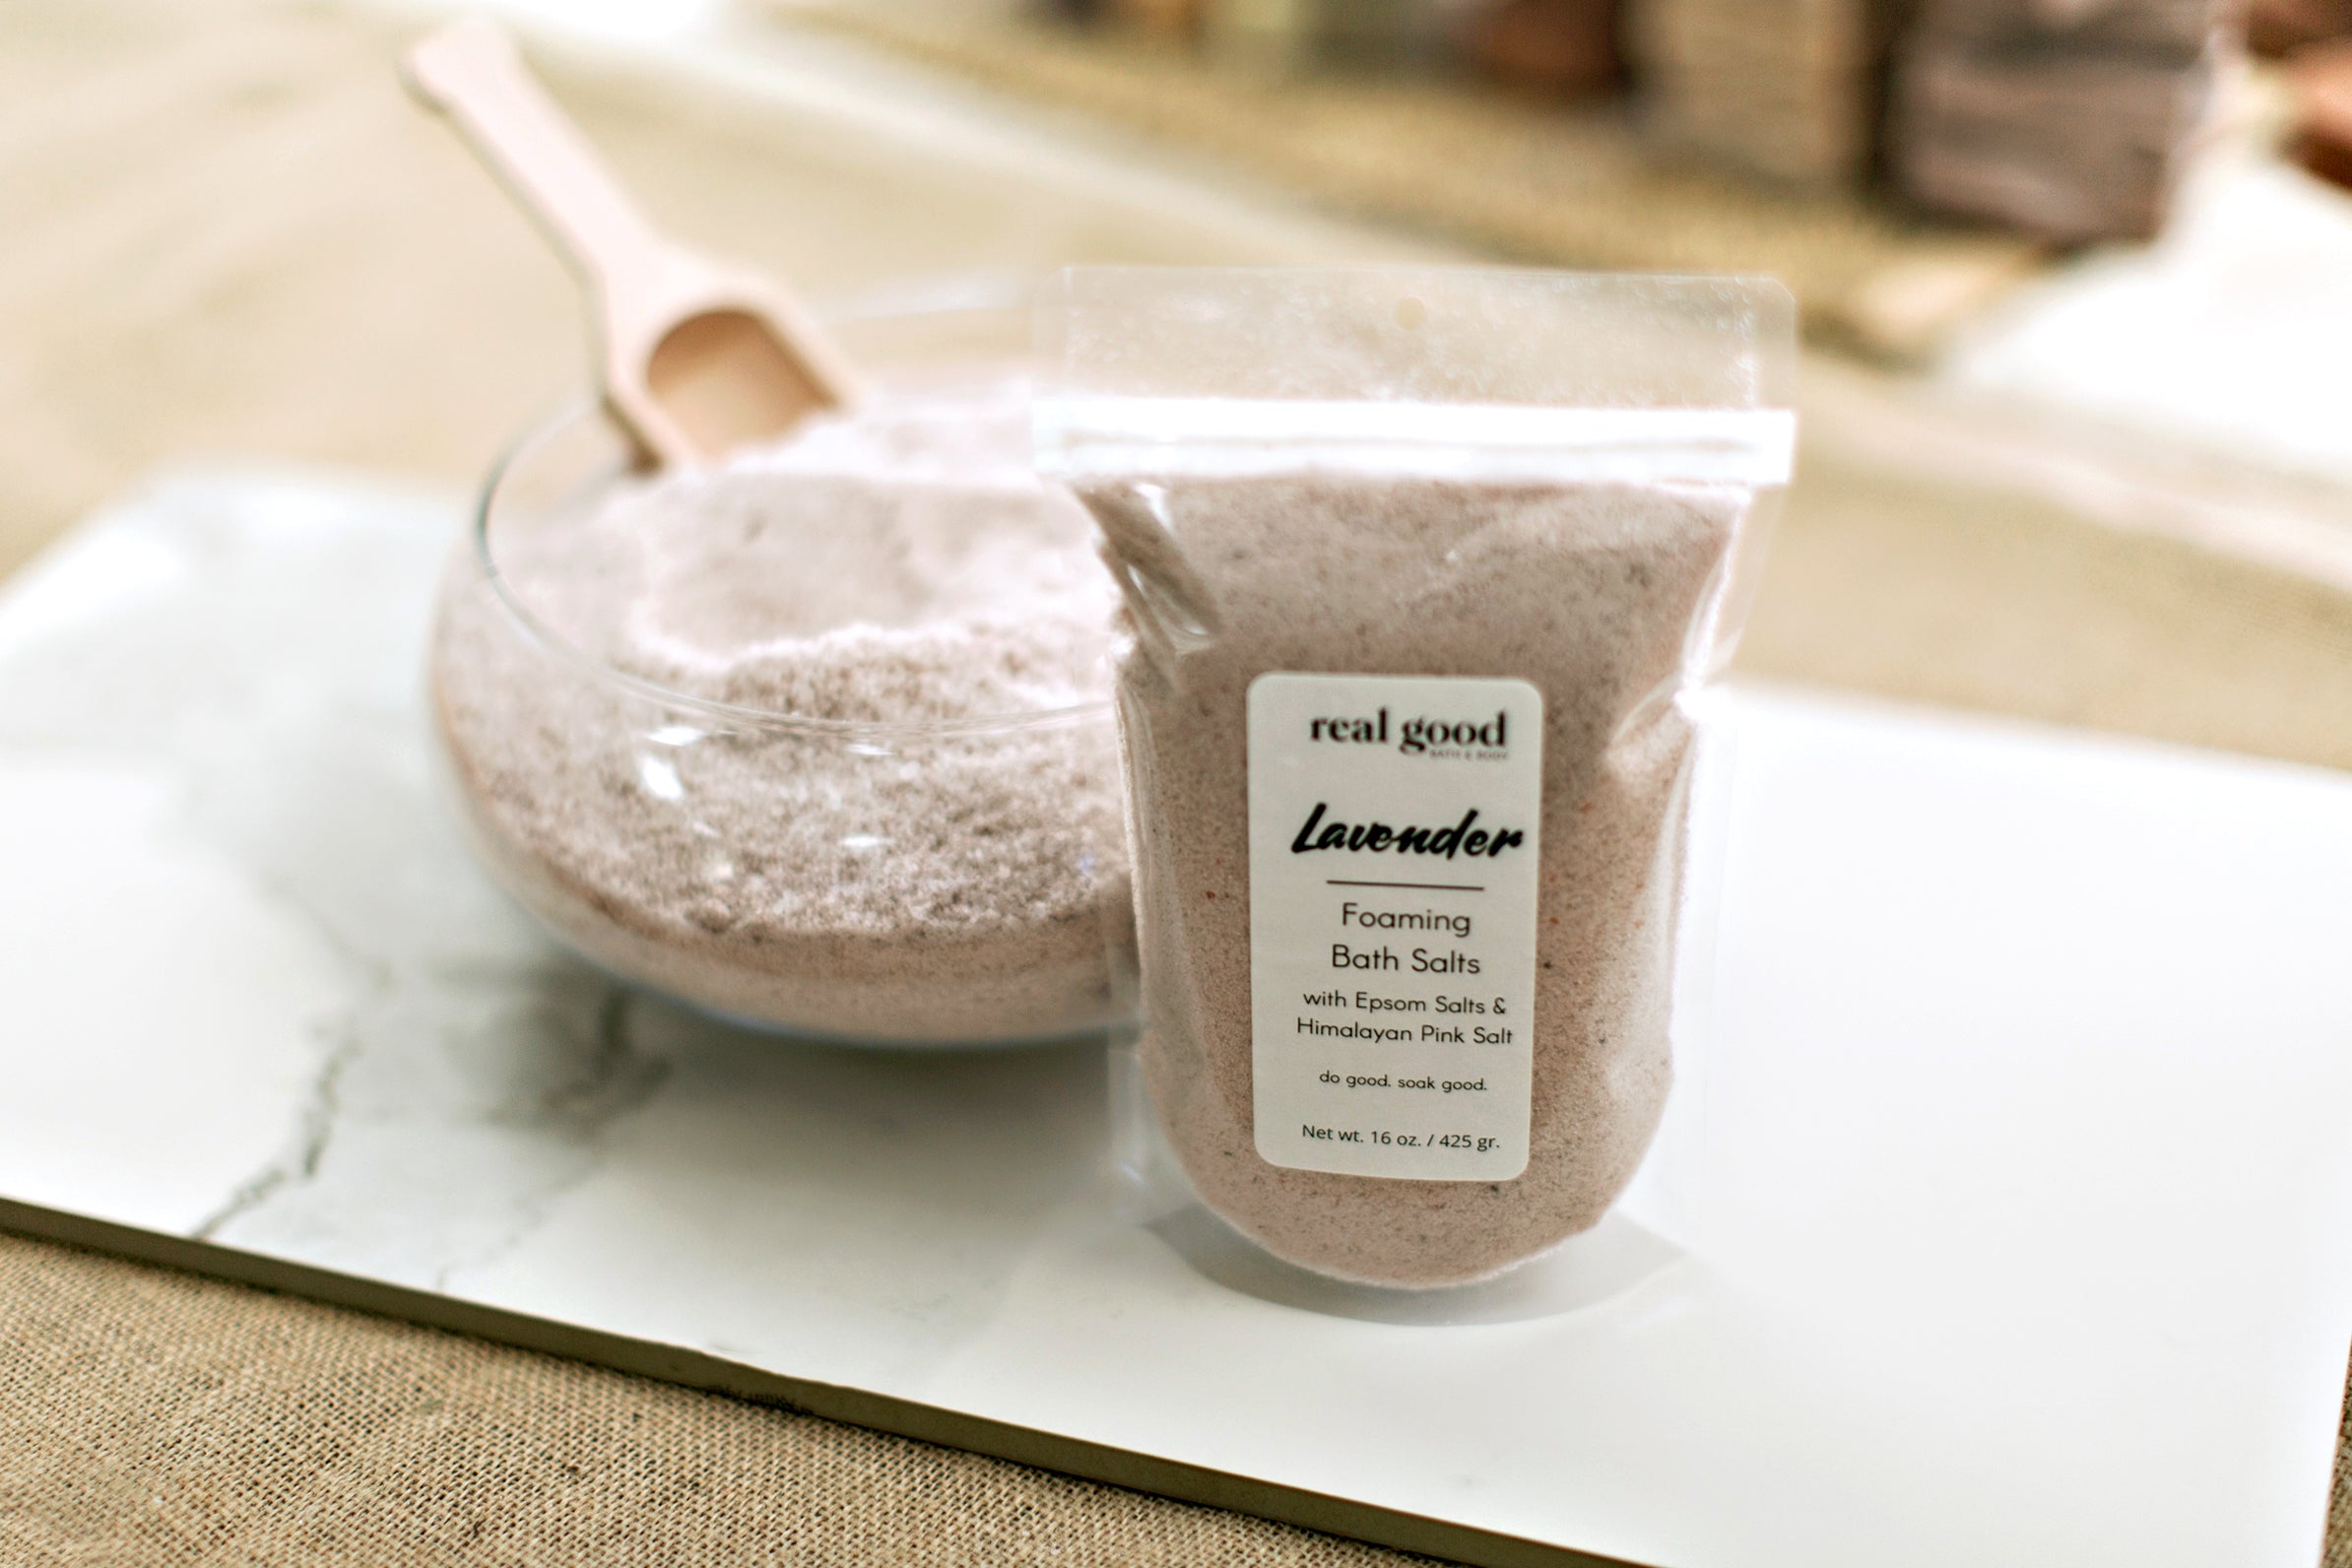 Lavender Foaming Bath Salts